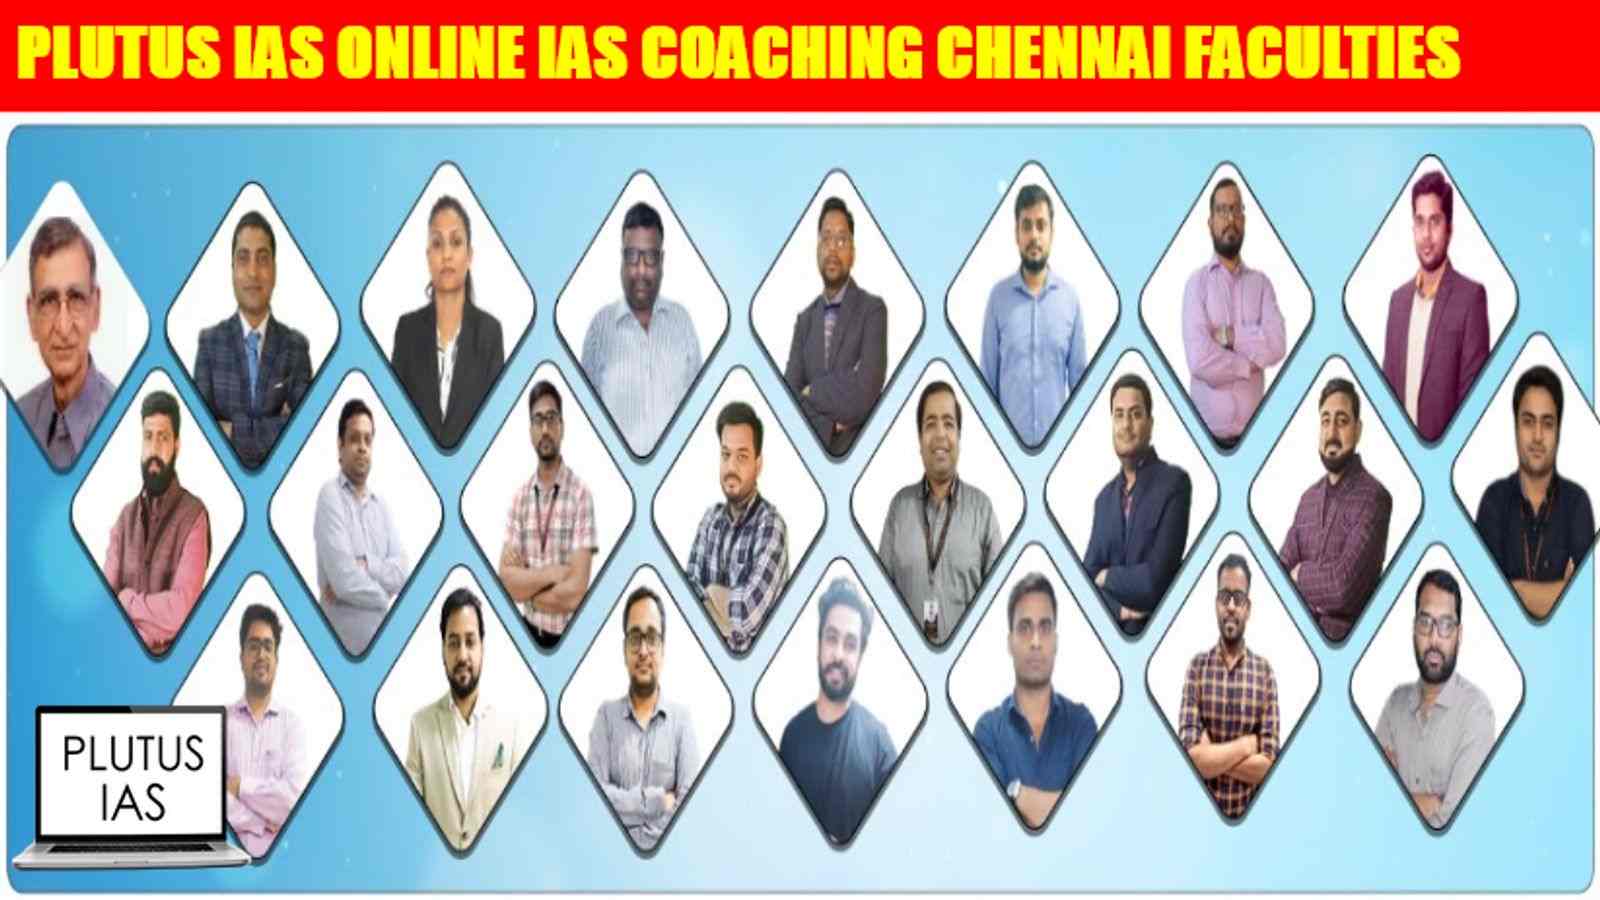 Plutus IAS Online Coaching Chennai Faculties